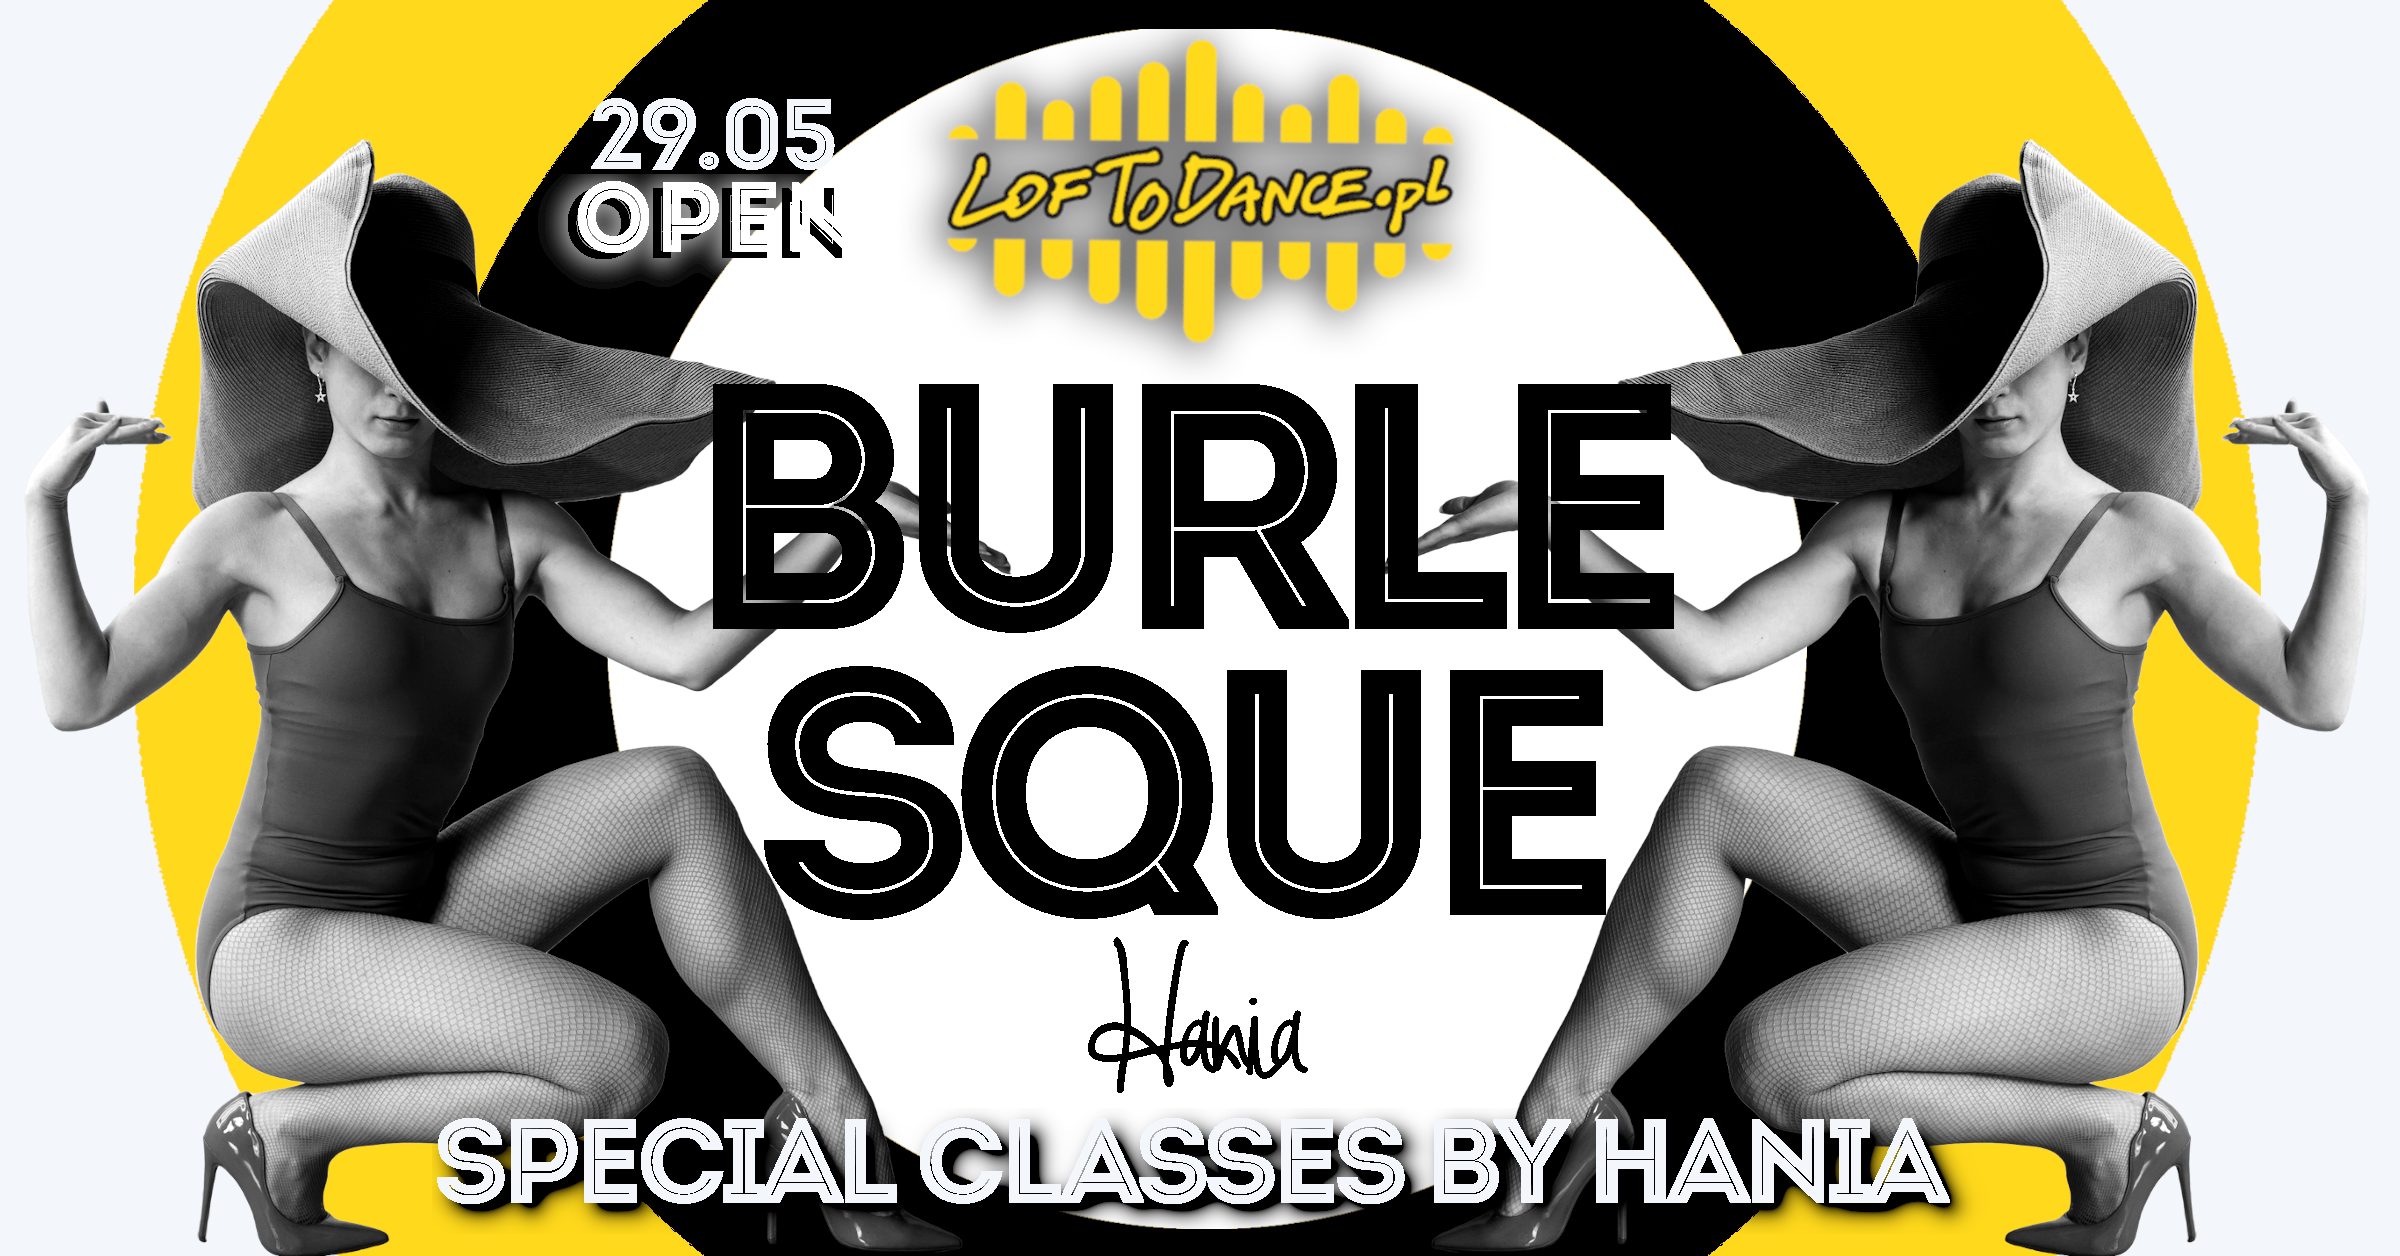 Burlesque - special classes